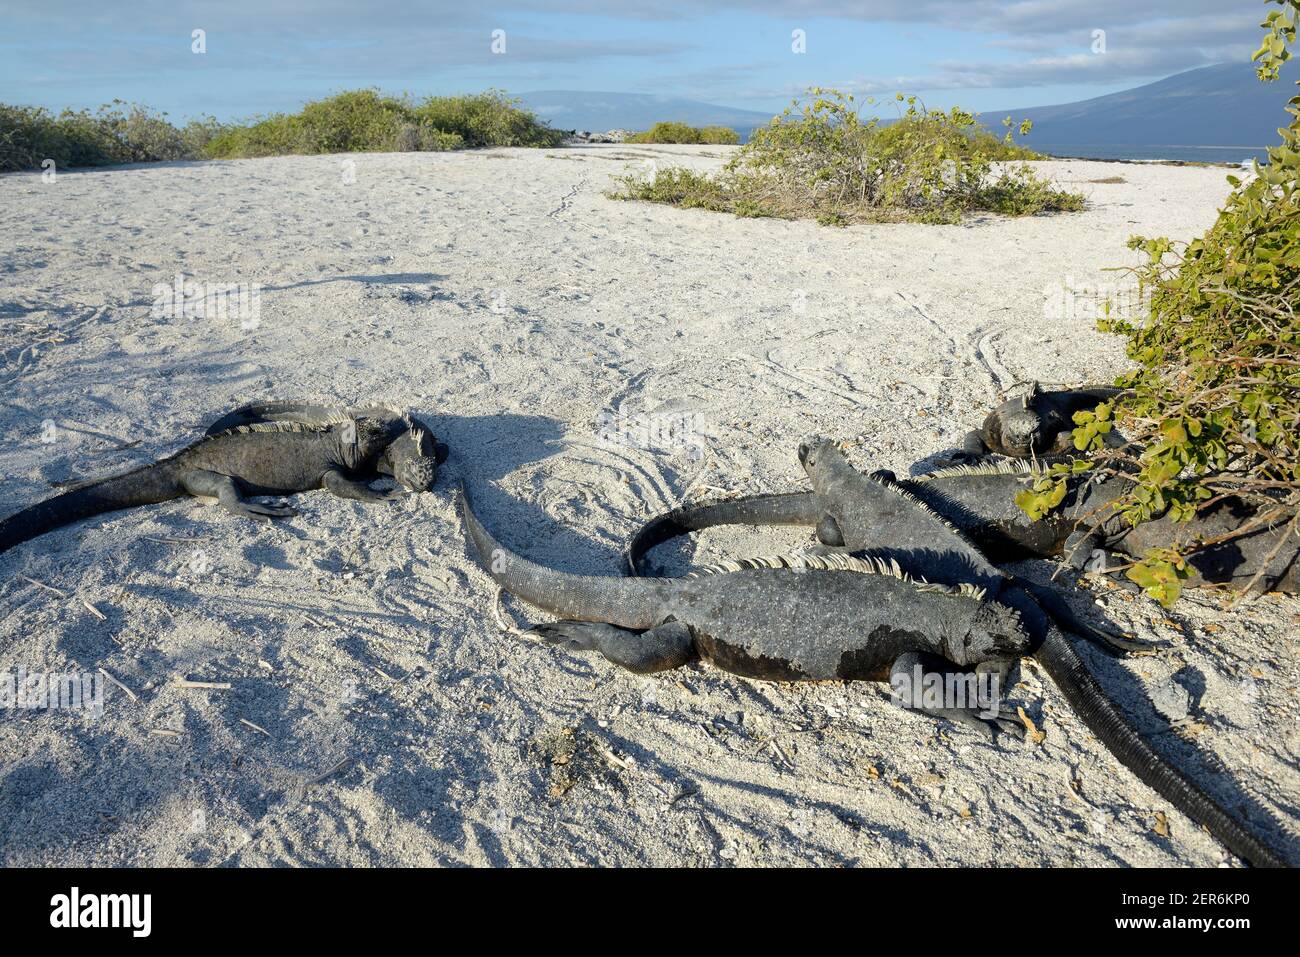 Iguana marine (Amblyrhynchus cristatus) soleil dans le sable, Punta Espinosa, île Fernandina, îles Galapagos, Équateur Banque D'Images